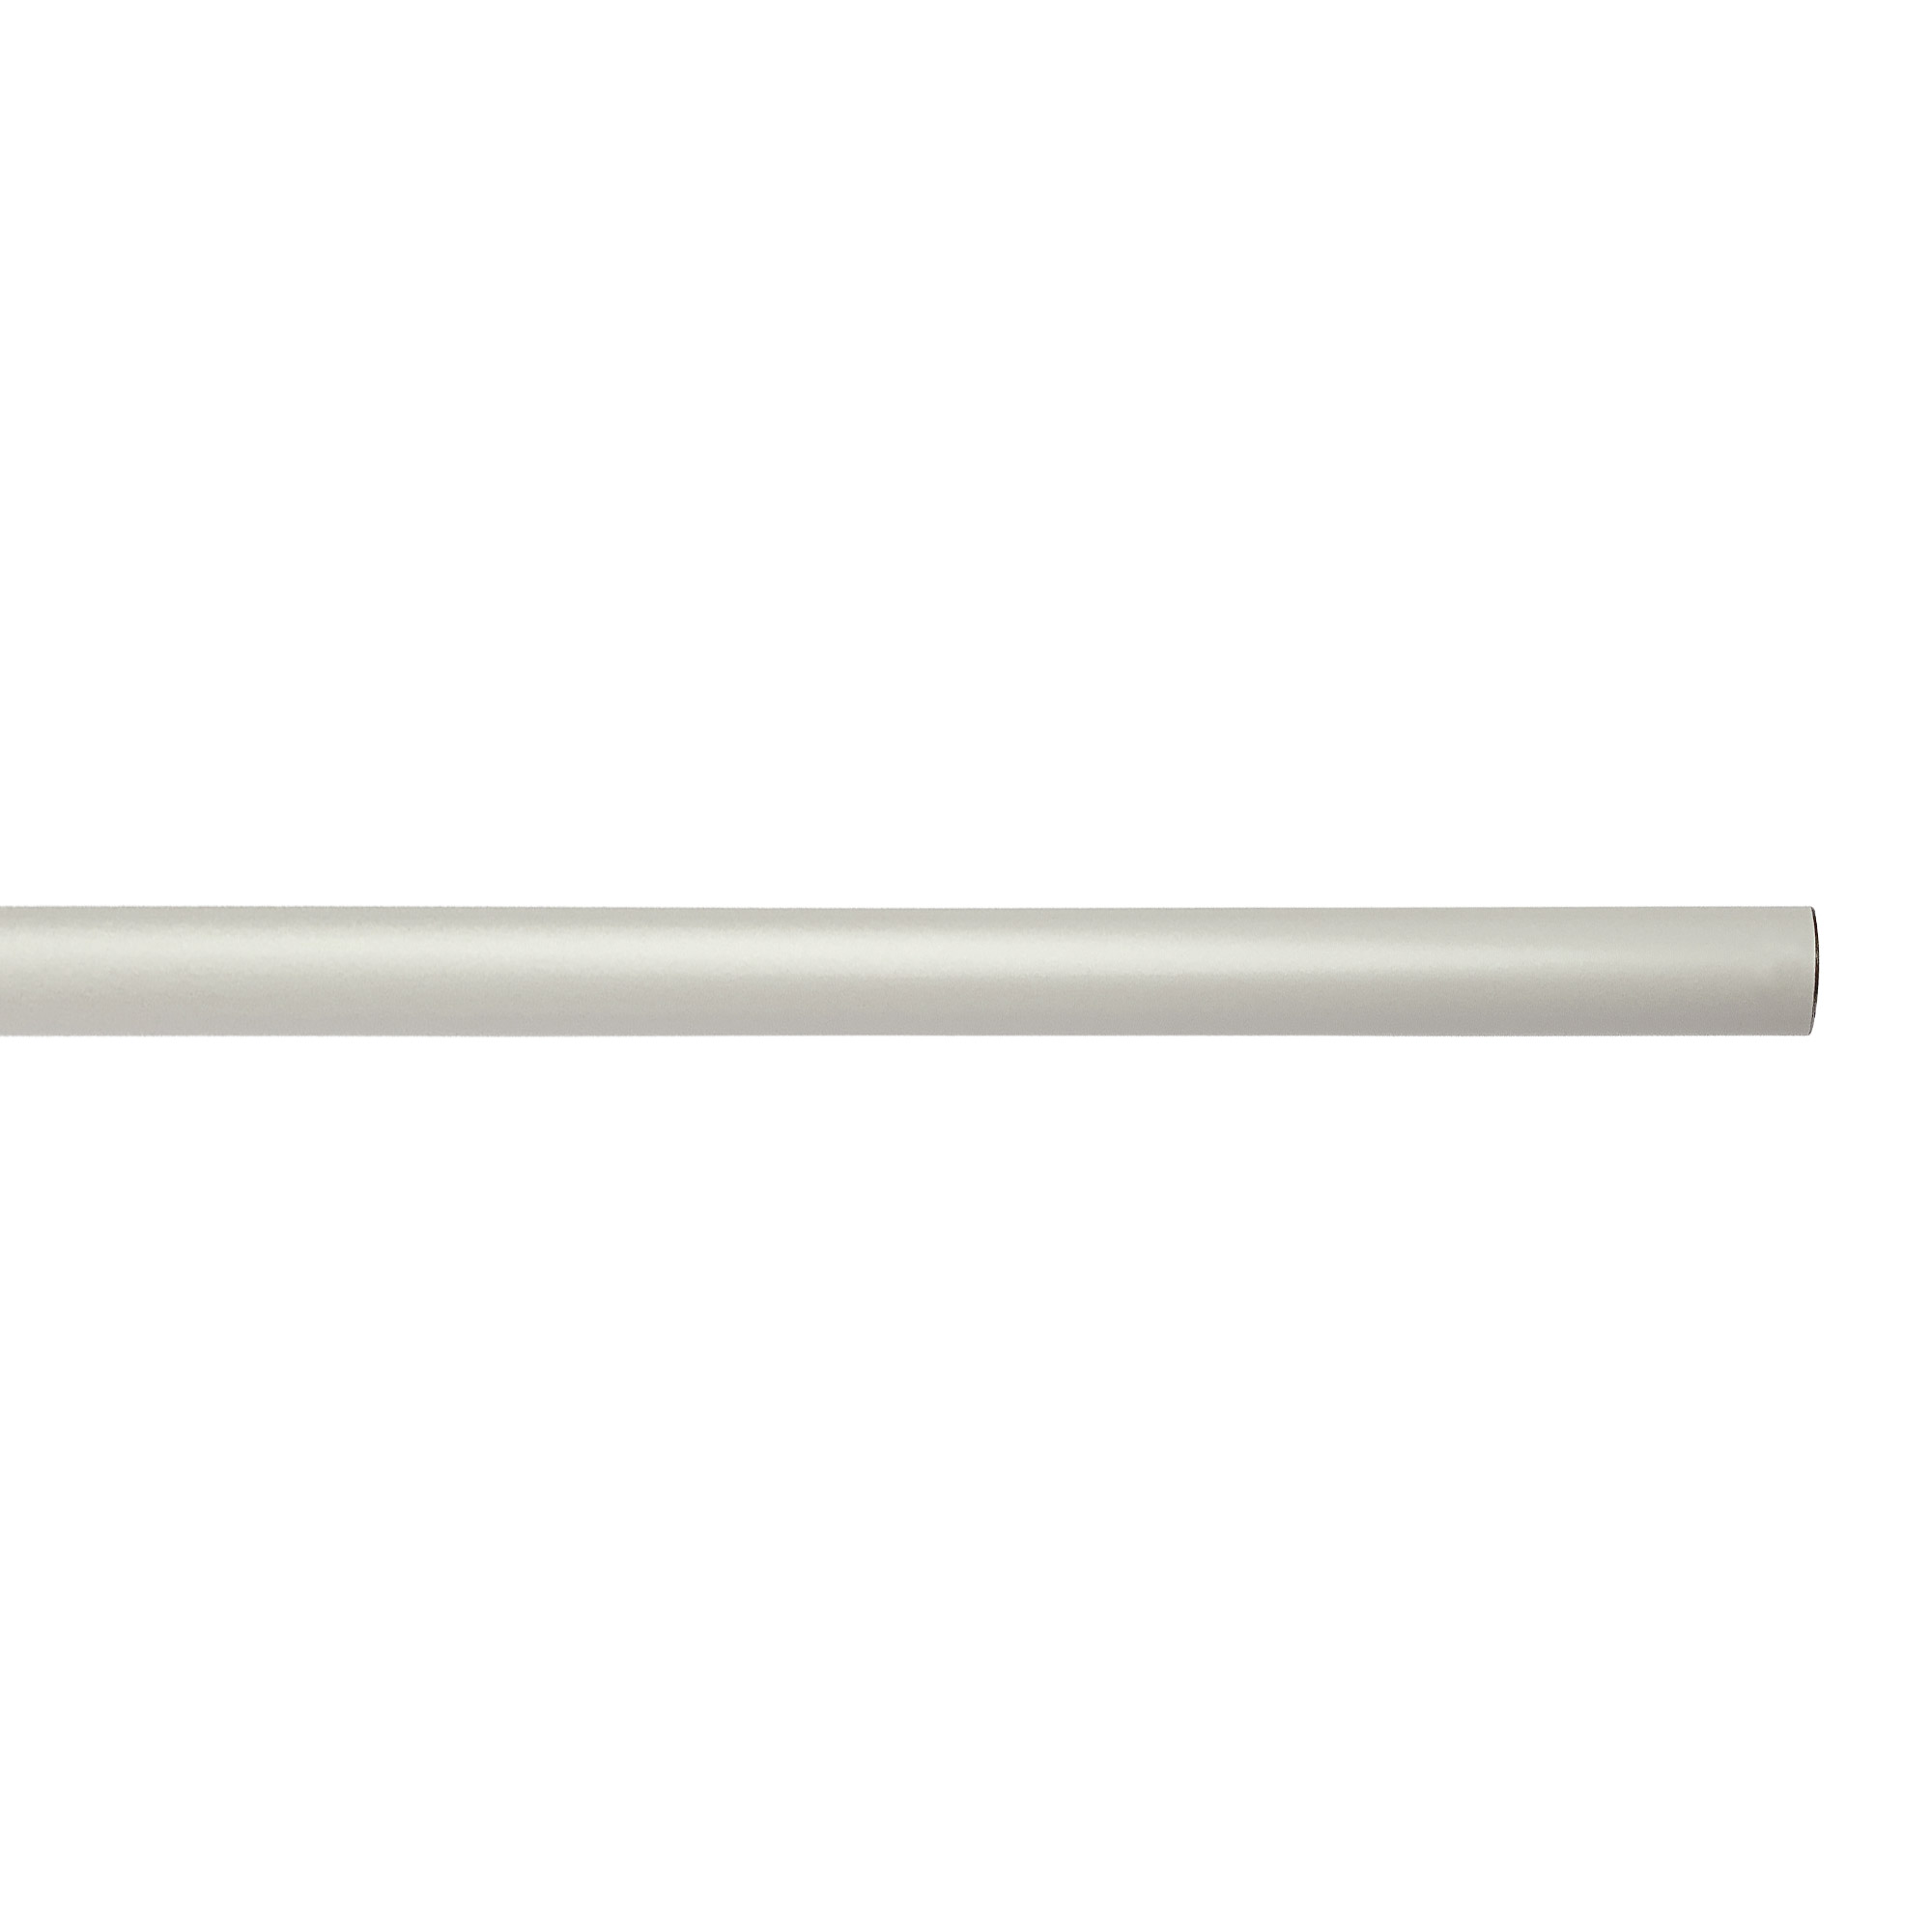 アイアンハンガーパイプ F型-棚下吊タイプ H100 ホワイト PS-HB008-70-G141 水平パイプは3サイズから2本、それぞれお好きな長さを選択可能です